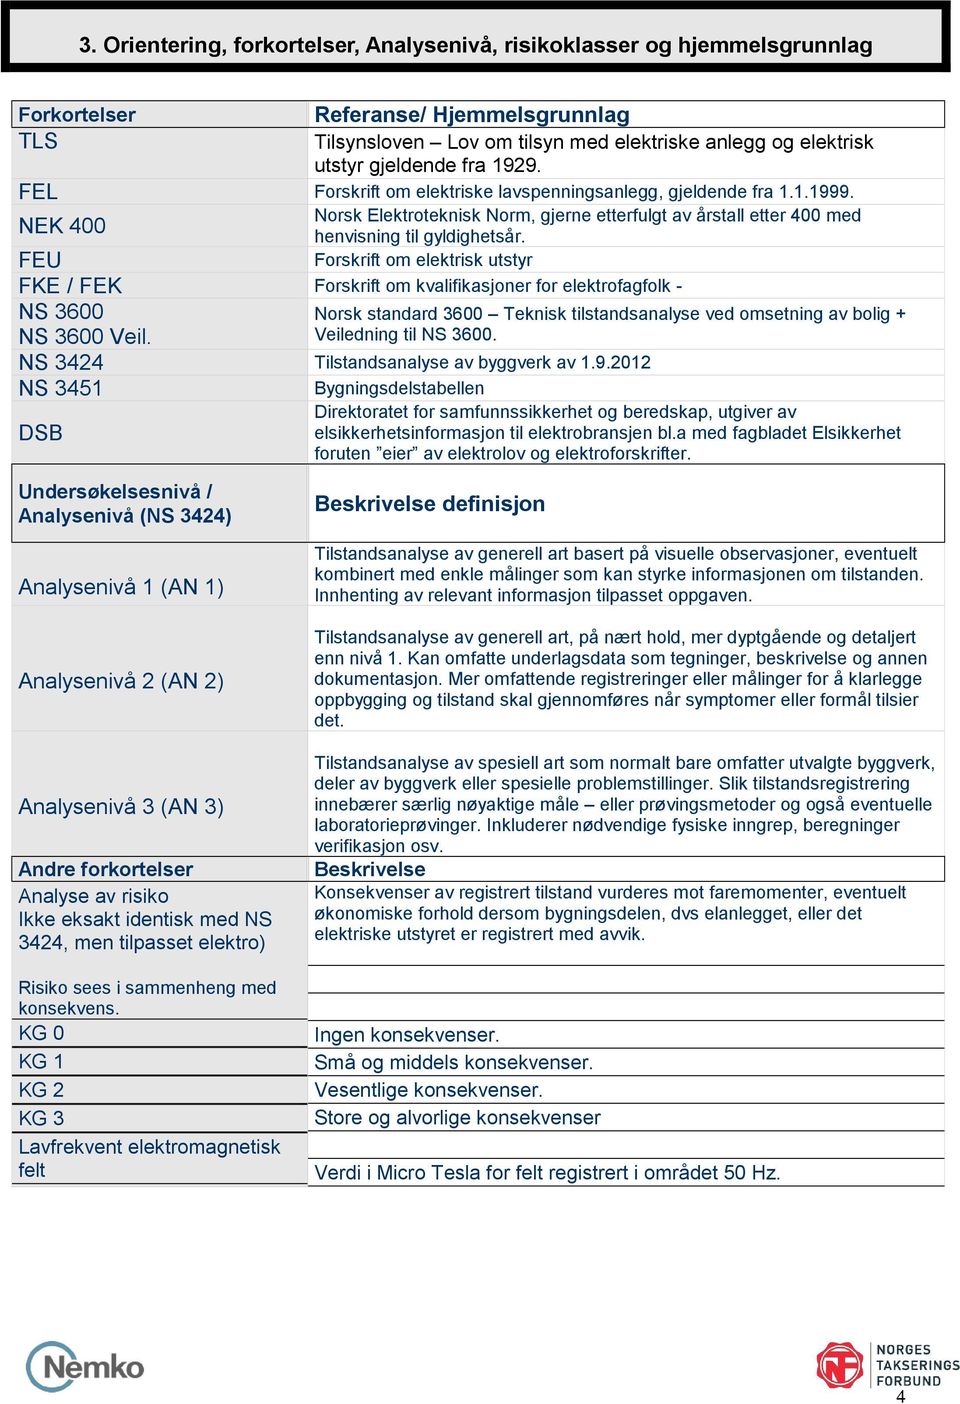 Forskrift om elektrisk utstyr FEU FKE / FEK Forskrift om kvalifikasjoner for elektrofagfolk - NS 3600 NS 3600 Veil. NS 3424 Tilstandsanalyse av byggverk av 1.9.